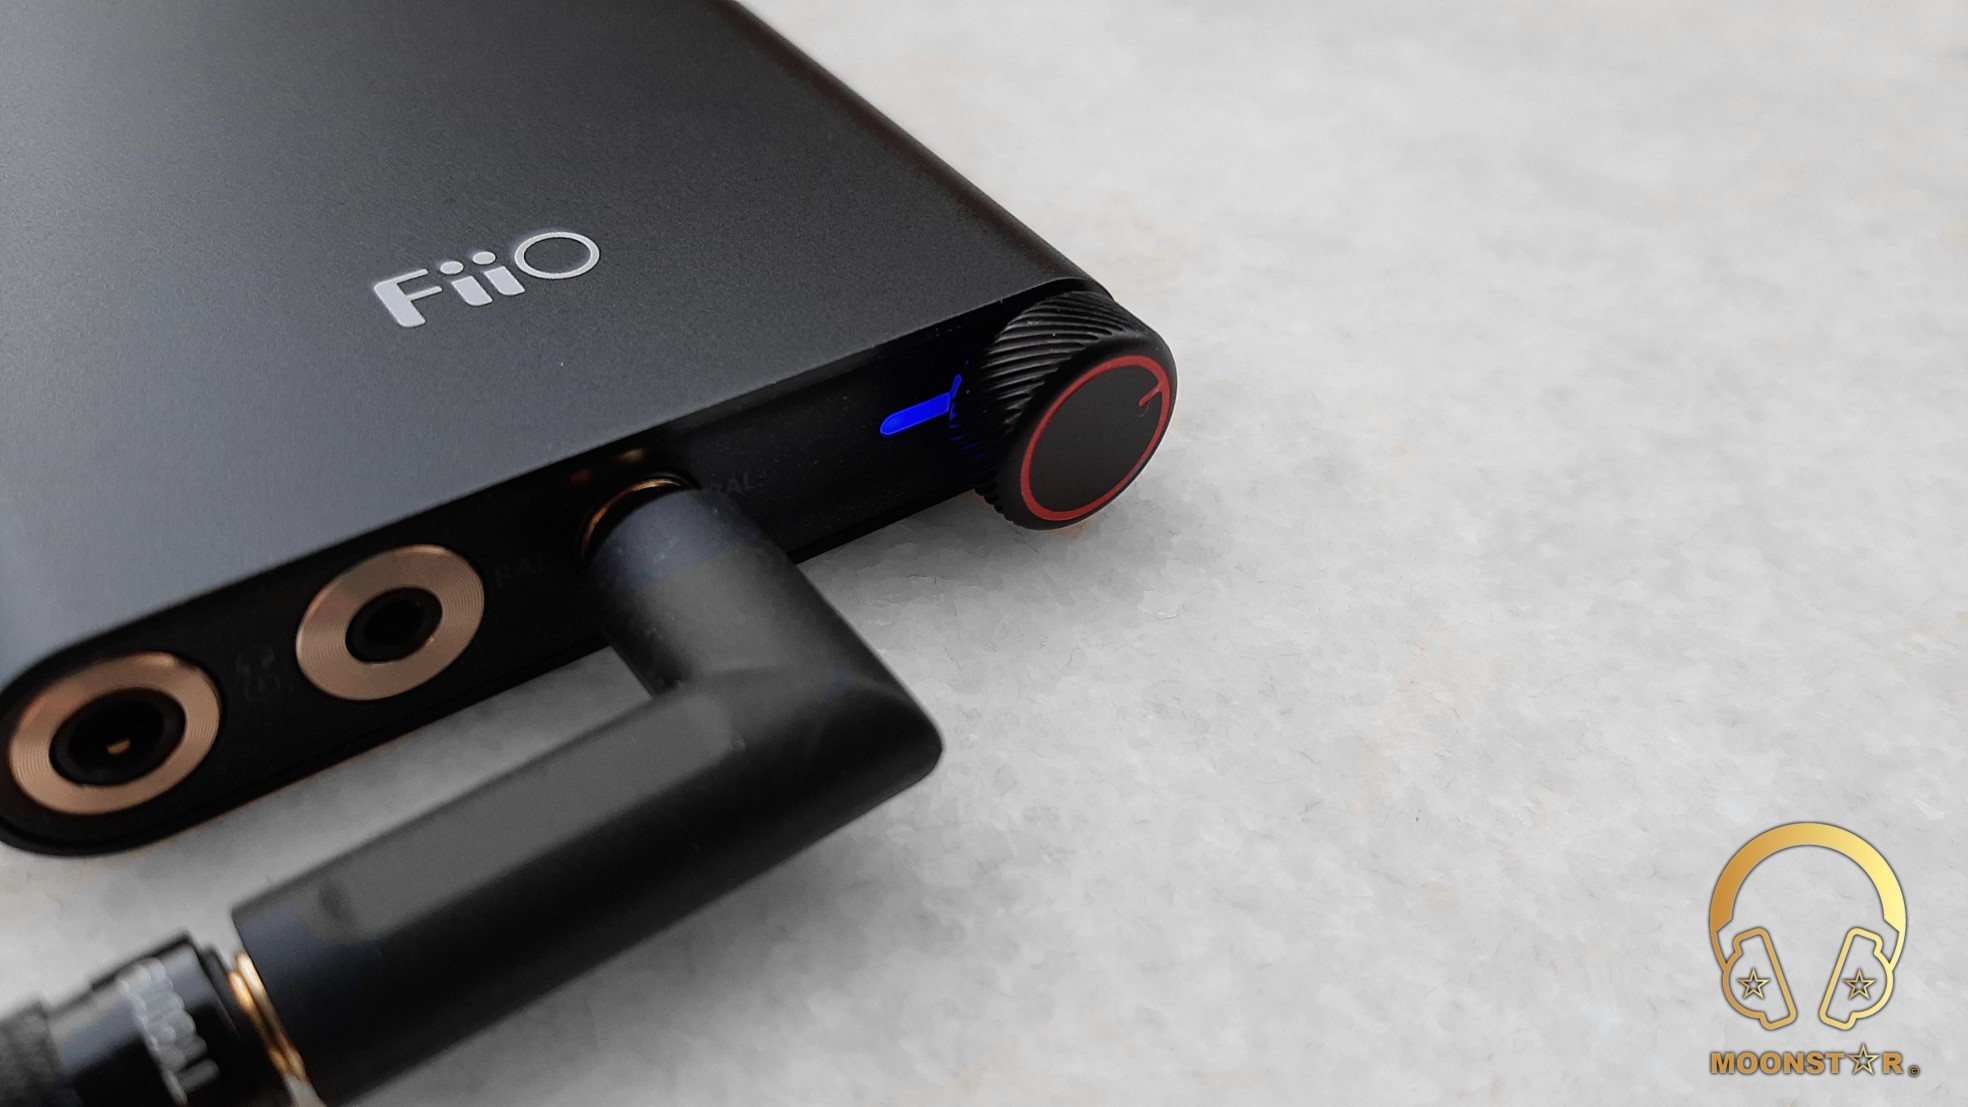 オーディオ機器 アンプ FiiO Q3 Portable DAC/Amplifier Review » MOONSTAR Reviews